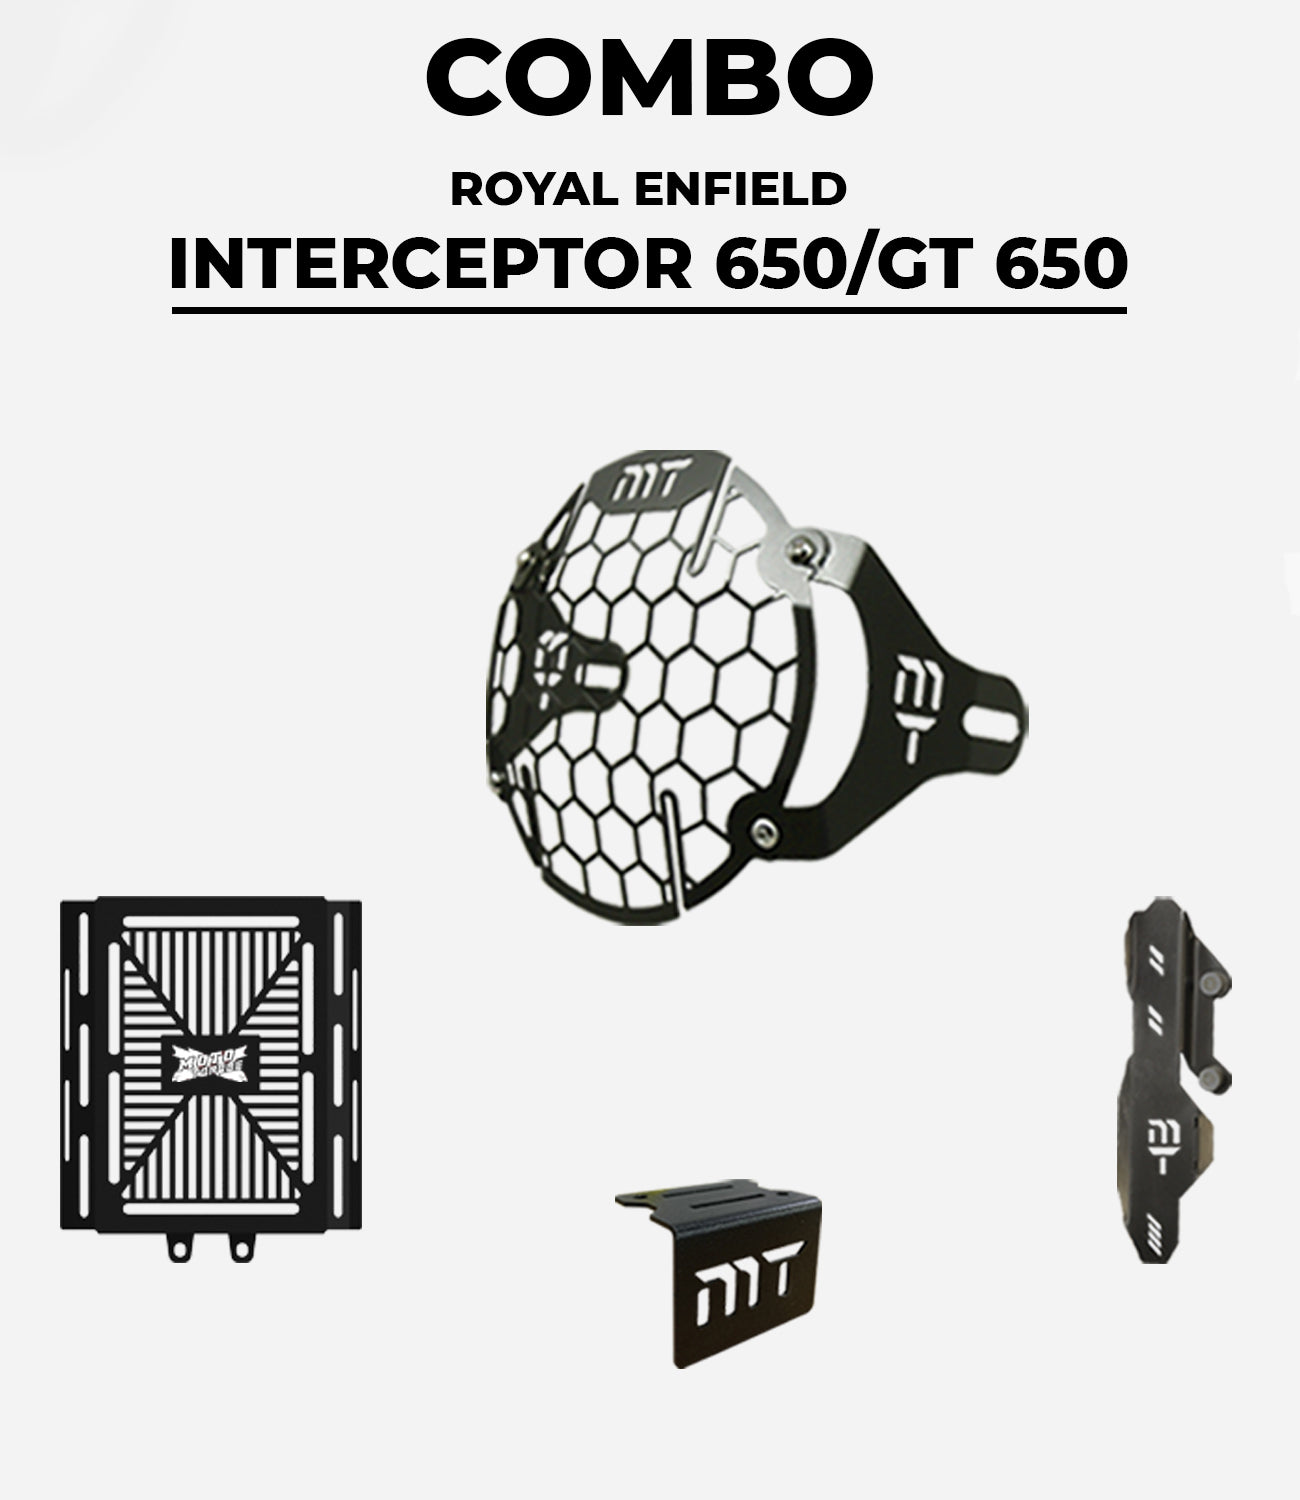 INTERCEPTOR/GT 650 - Combo Kit